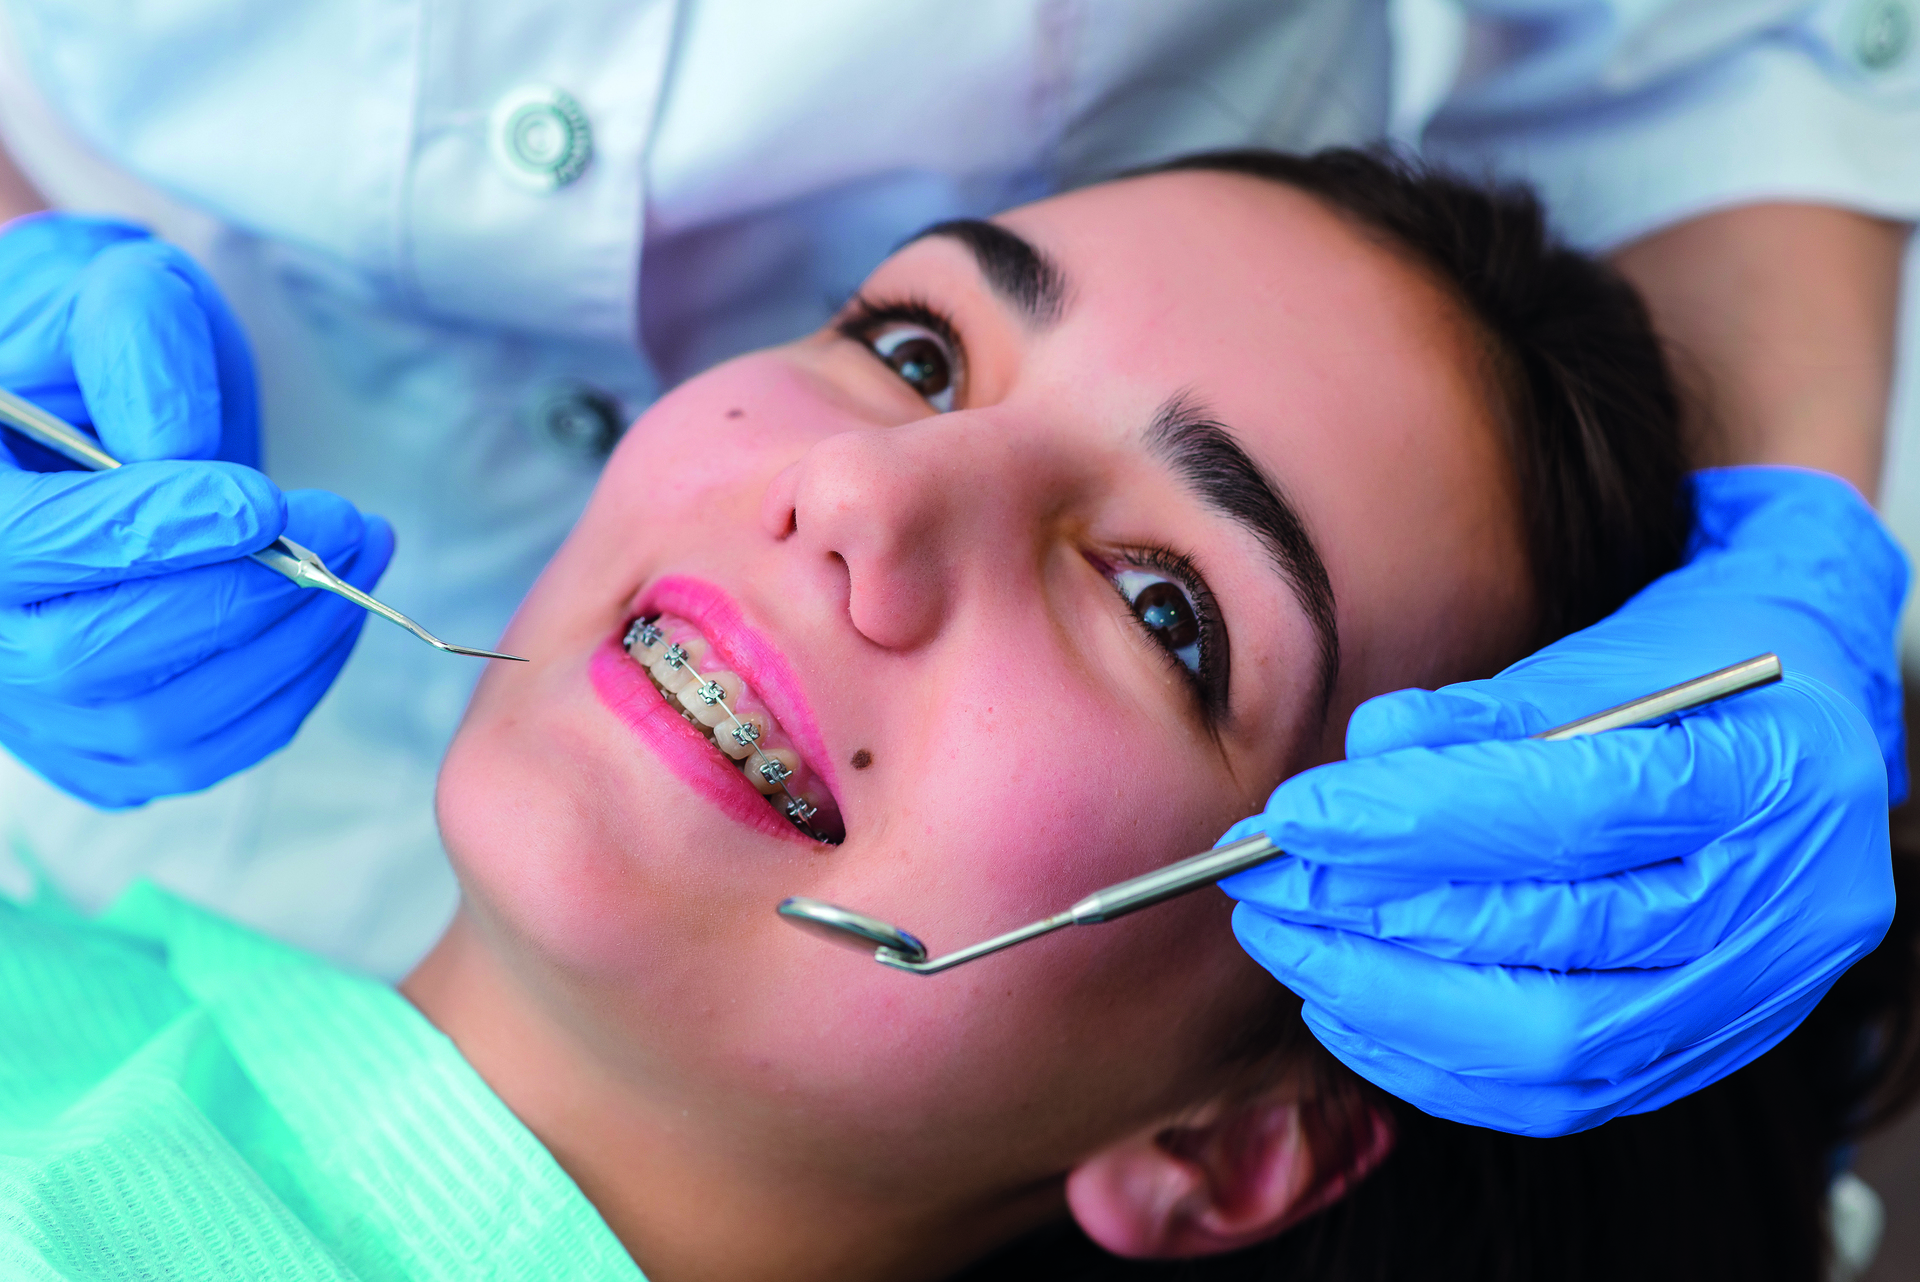 La ortodoncia y la ortopedia (dentofacial) son dos especialidades dentales que a menudo se confunden.